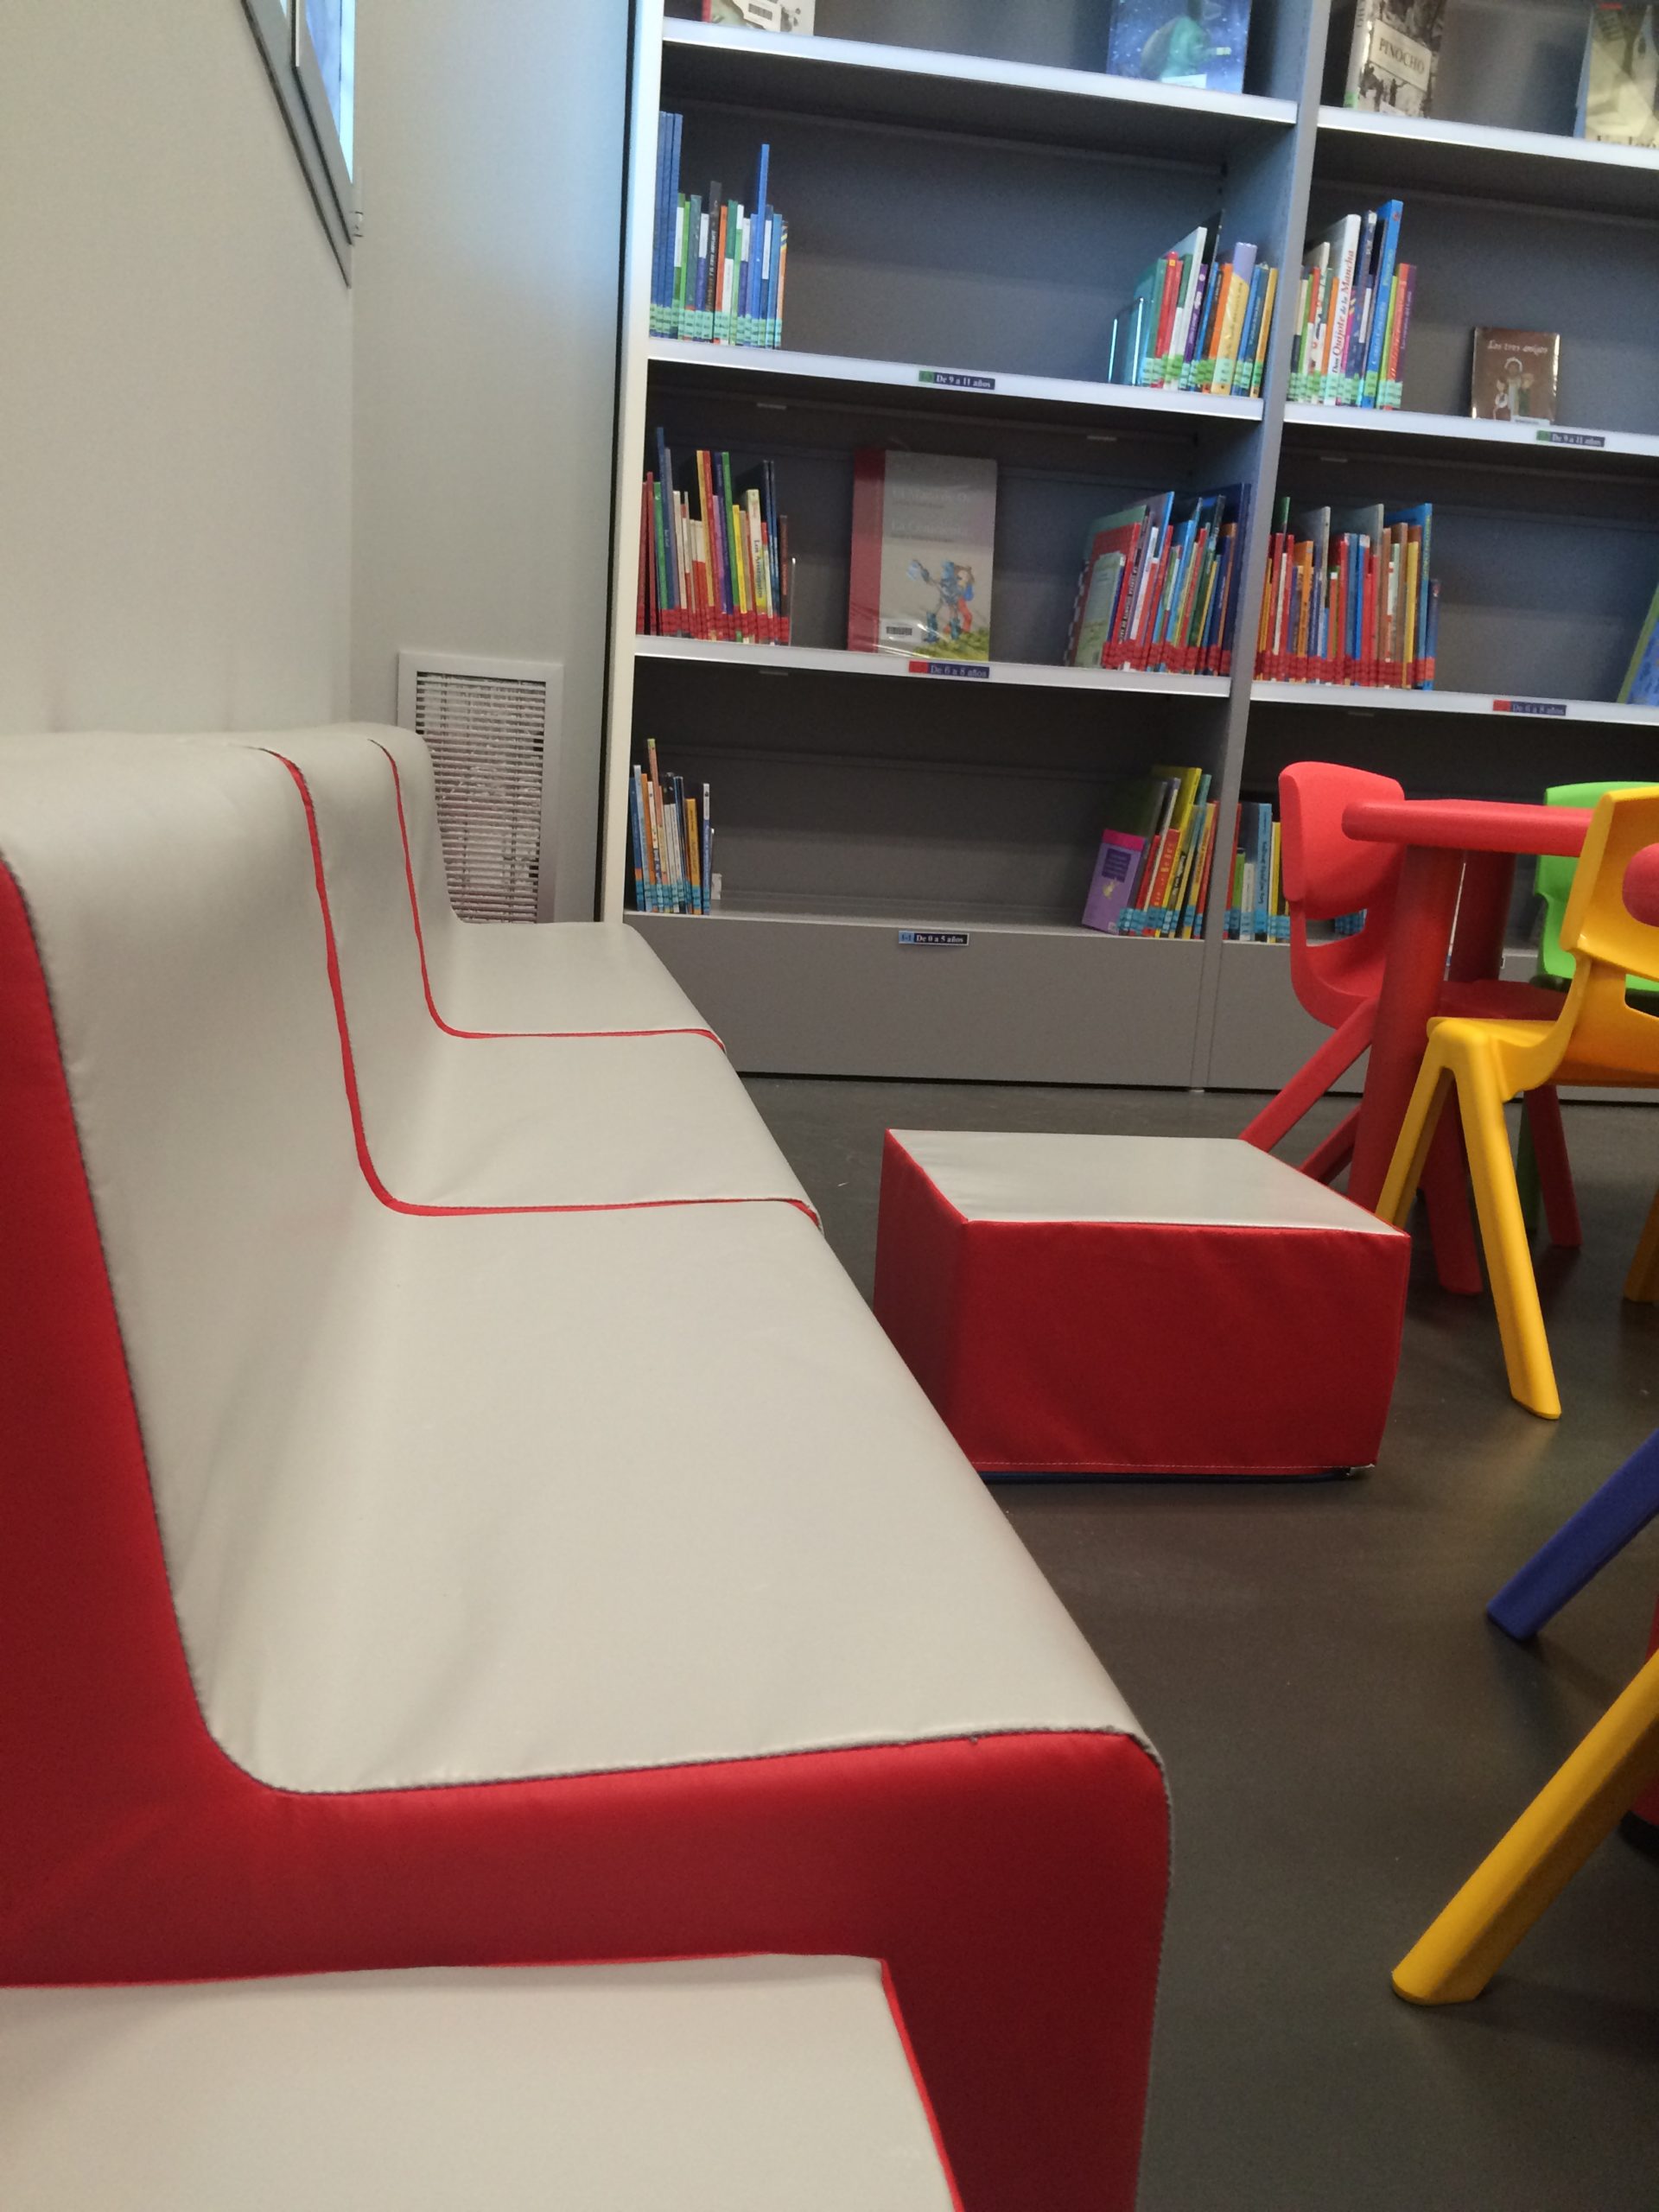 Biblioteca-Valdespartera-espacio-publico-equipamiento-interiorismo-y-amueblamiento-integral-de-oficinas-muebles-oficina